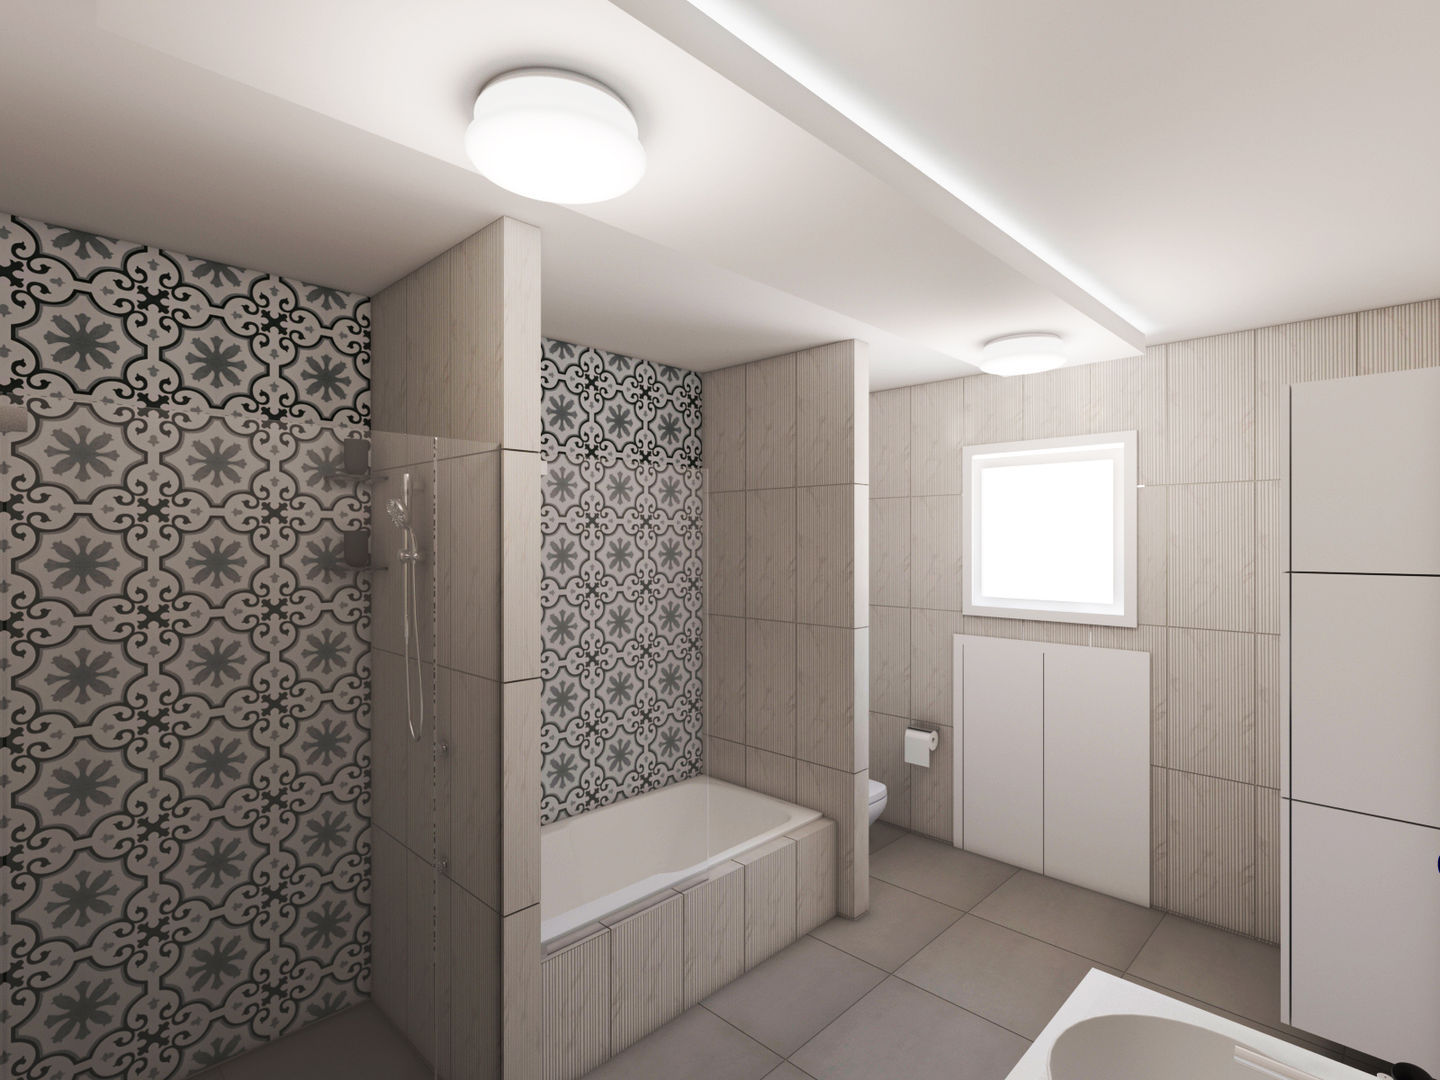 Banyo Tadilat Tasarımı, Sanal Mimarlık Hizmetleri Sanal Mimarlık Hizmetleri Salle de bain moderne